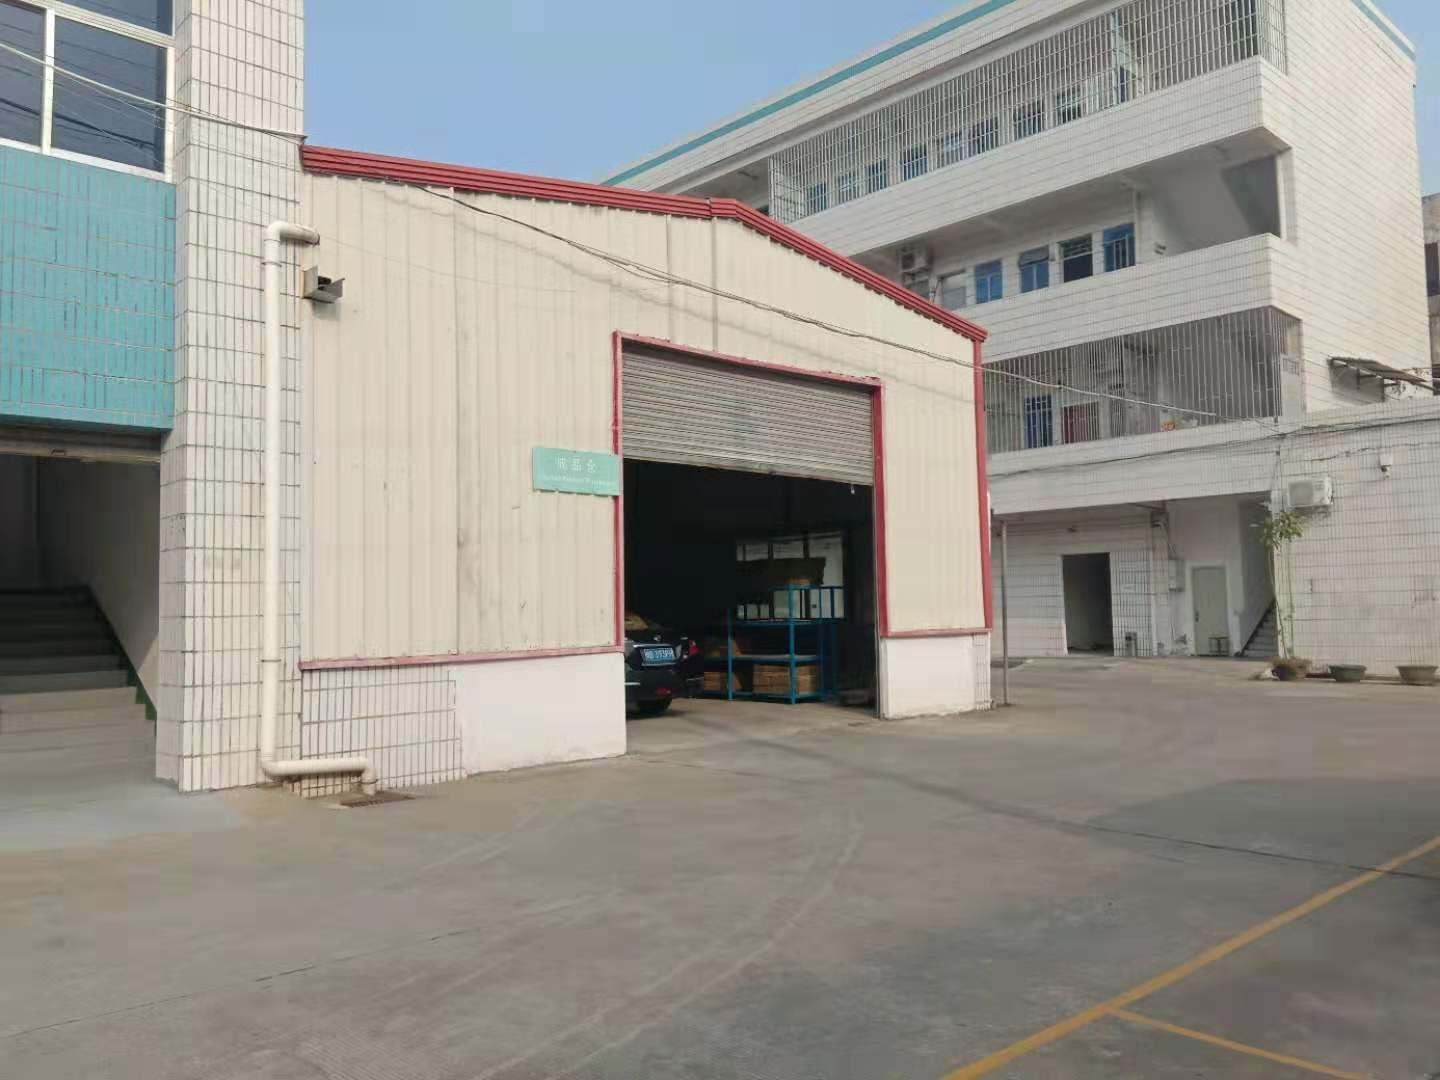 厂房可以做仓库或小噪音行业。